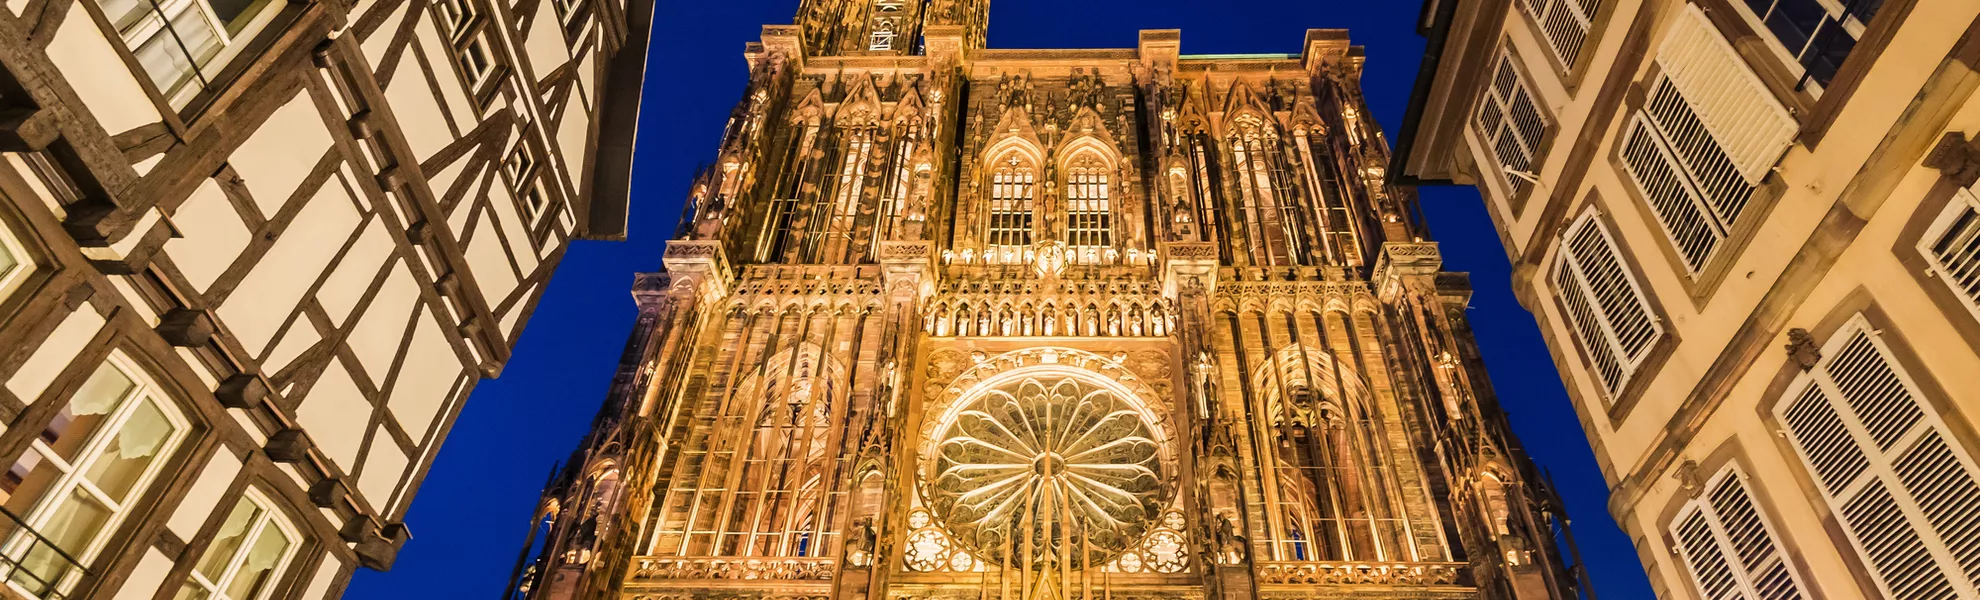 Notre Dame de Strasbourg - © arkanto - stock.adobe.com